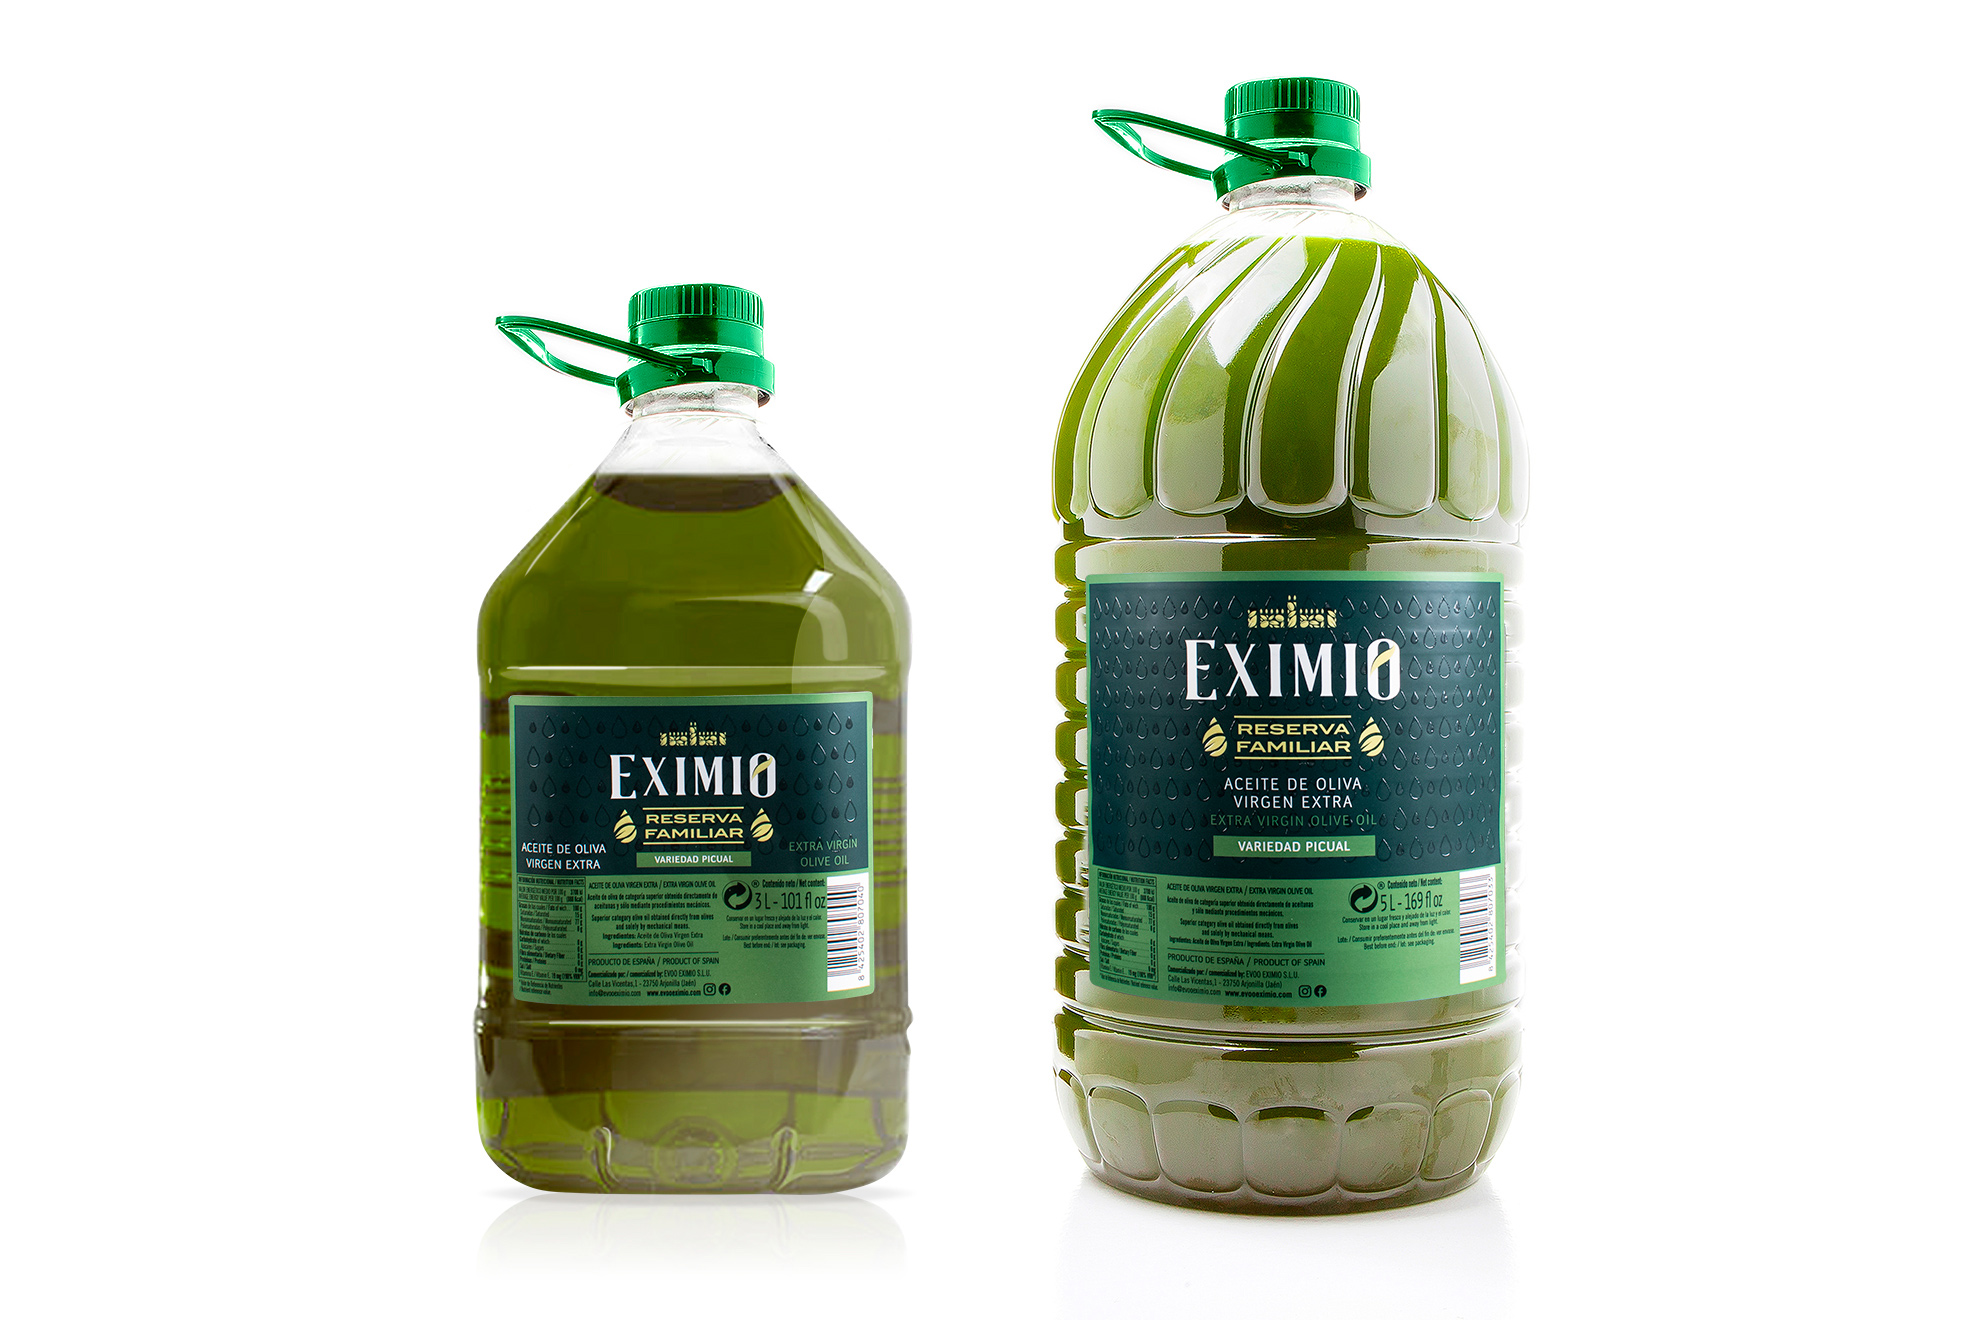 Regere Emporium diseño para aove. Gama_packaging_premium_aceite_oliva